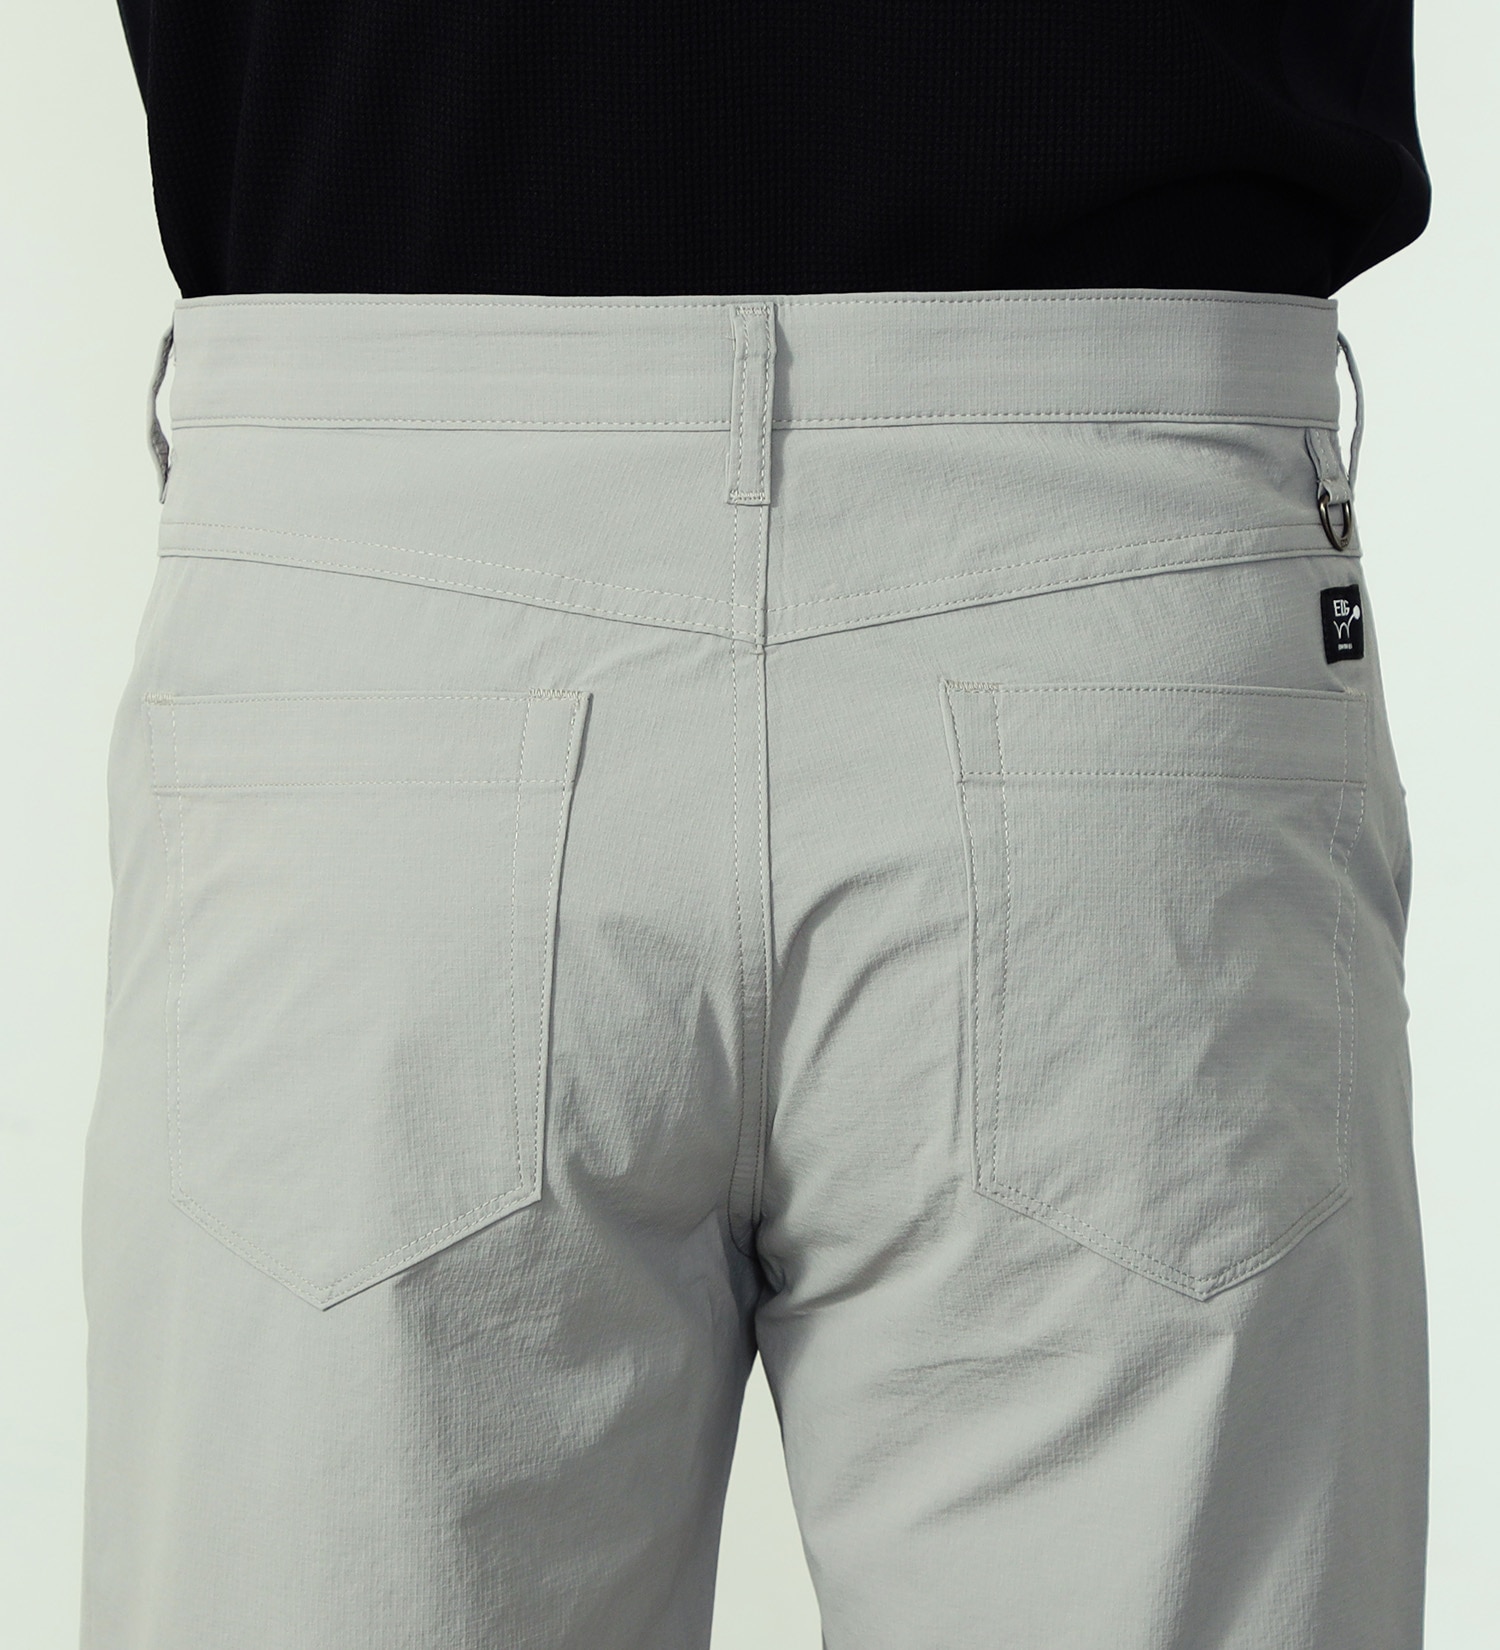 EDWIN(エドウイン)のEDWIN GOLF ショートパンツ 軽量|パンツ/ショート丈/メンズ|グレー